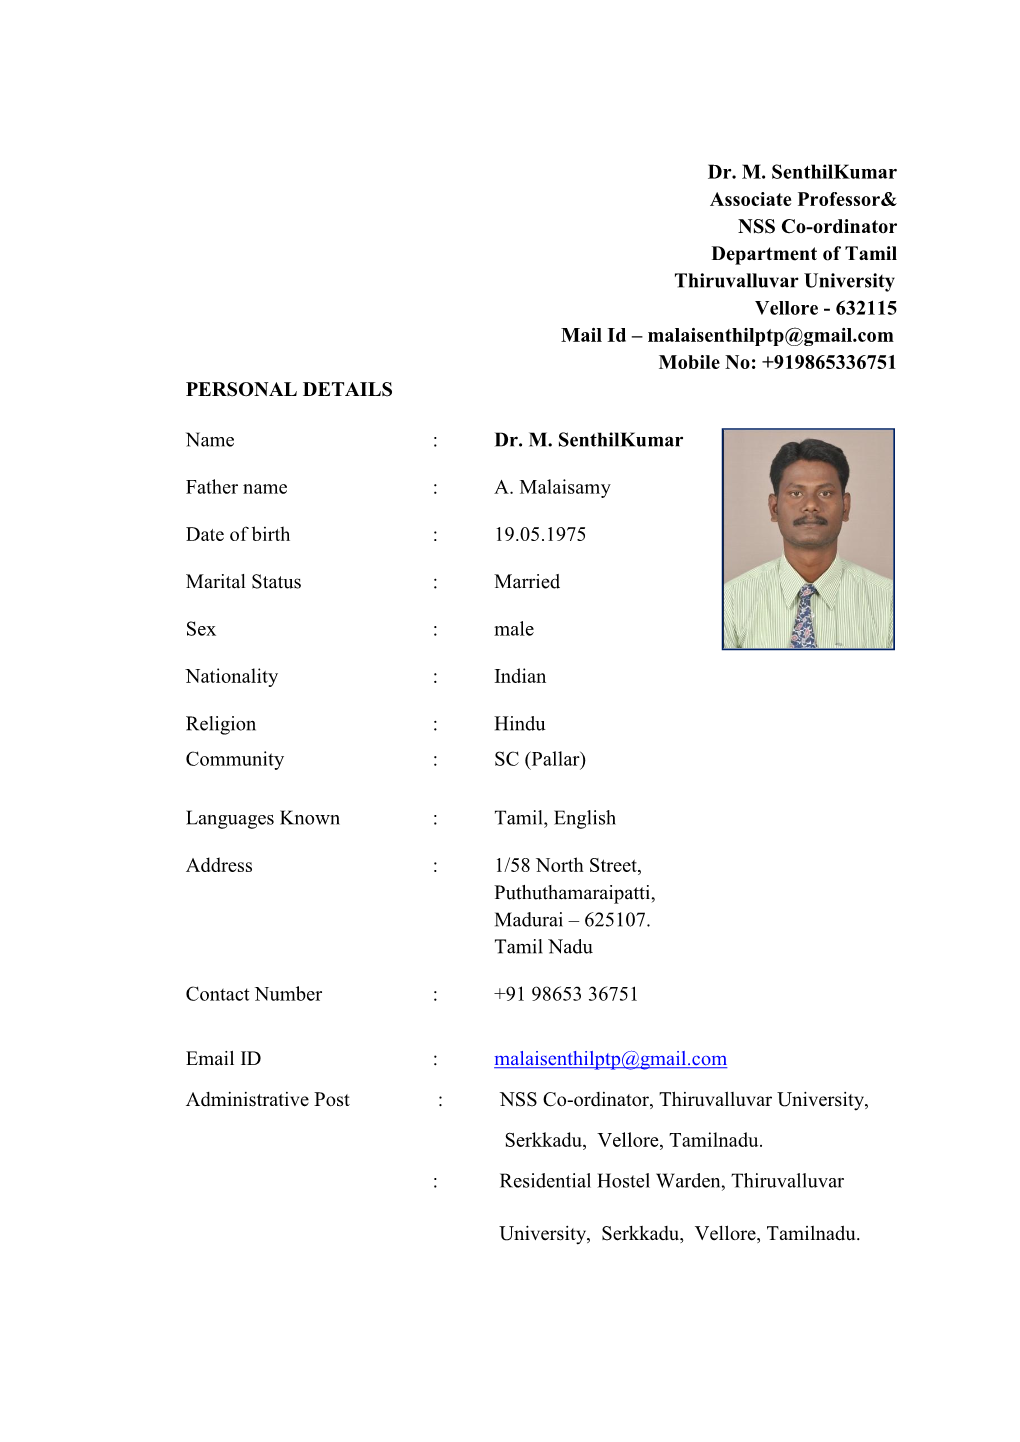 Dr. M. Senthilkumar Associate Professor& NSS Co-Ordinator